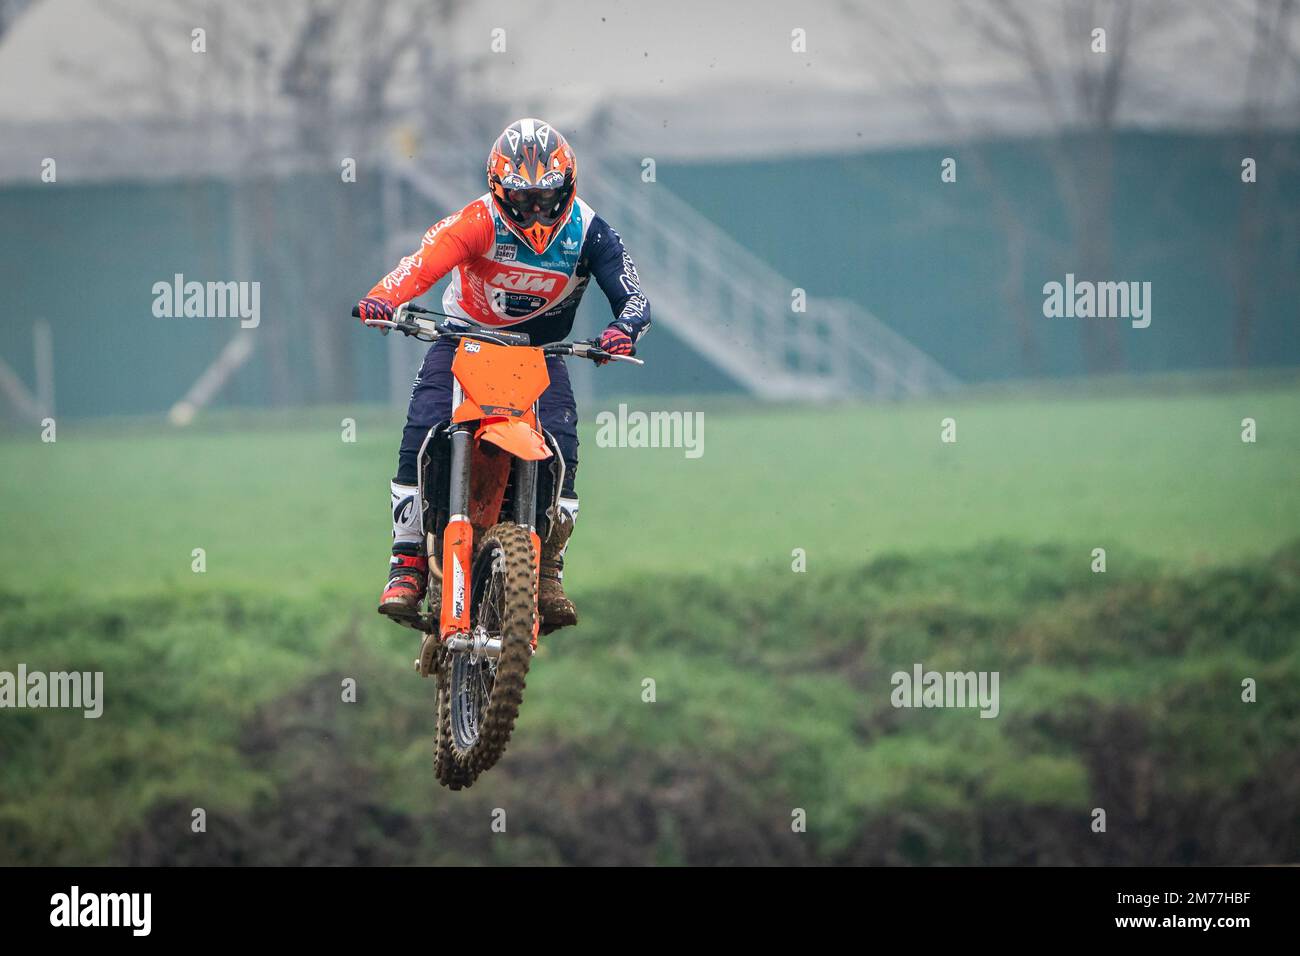 Crema, Italia – 12/2022: Moto de motocross realizando acrobacias en pista de entrenamiento Foto de stock